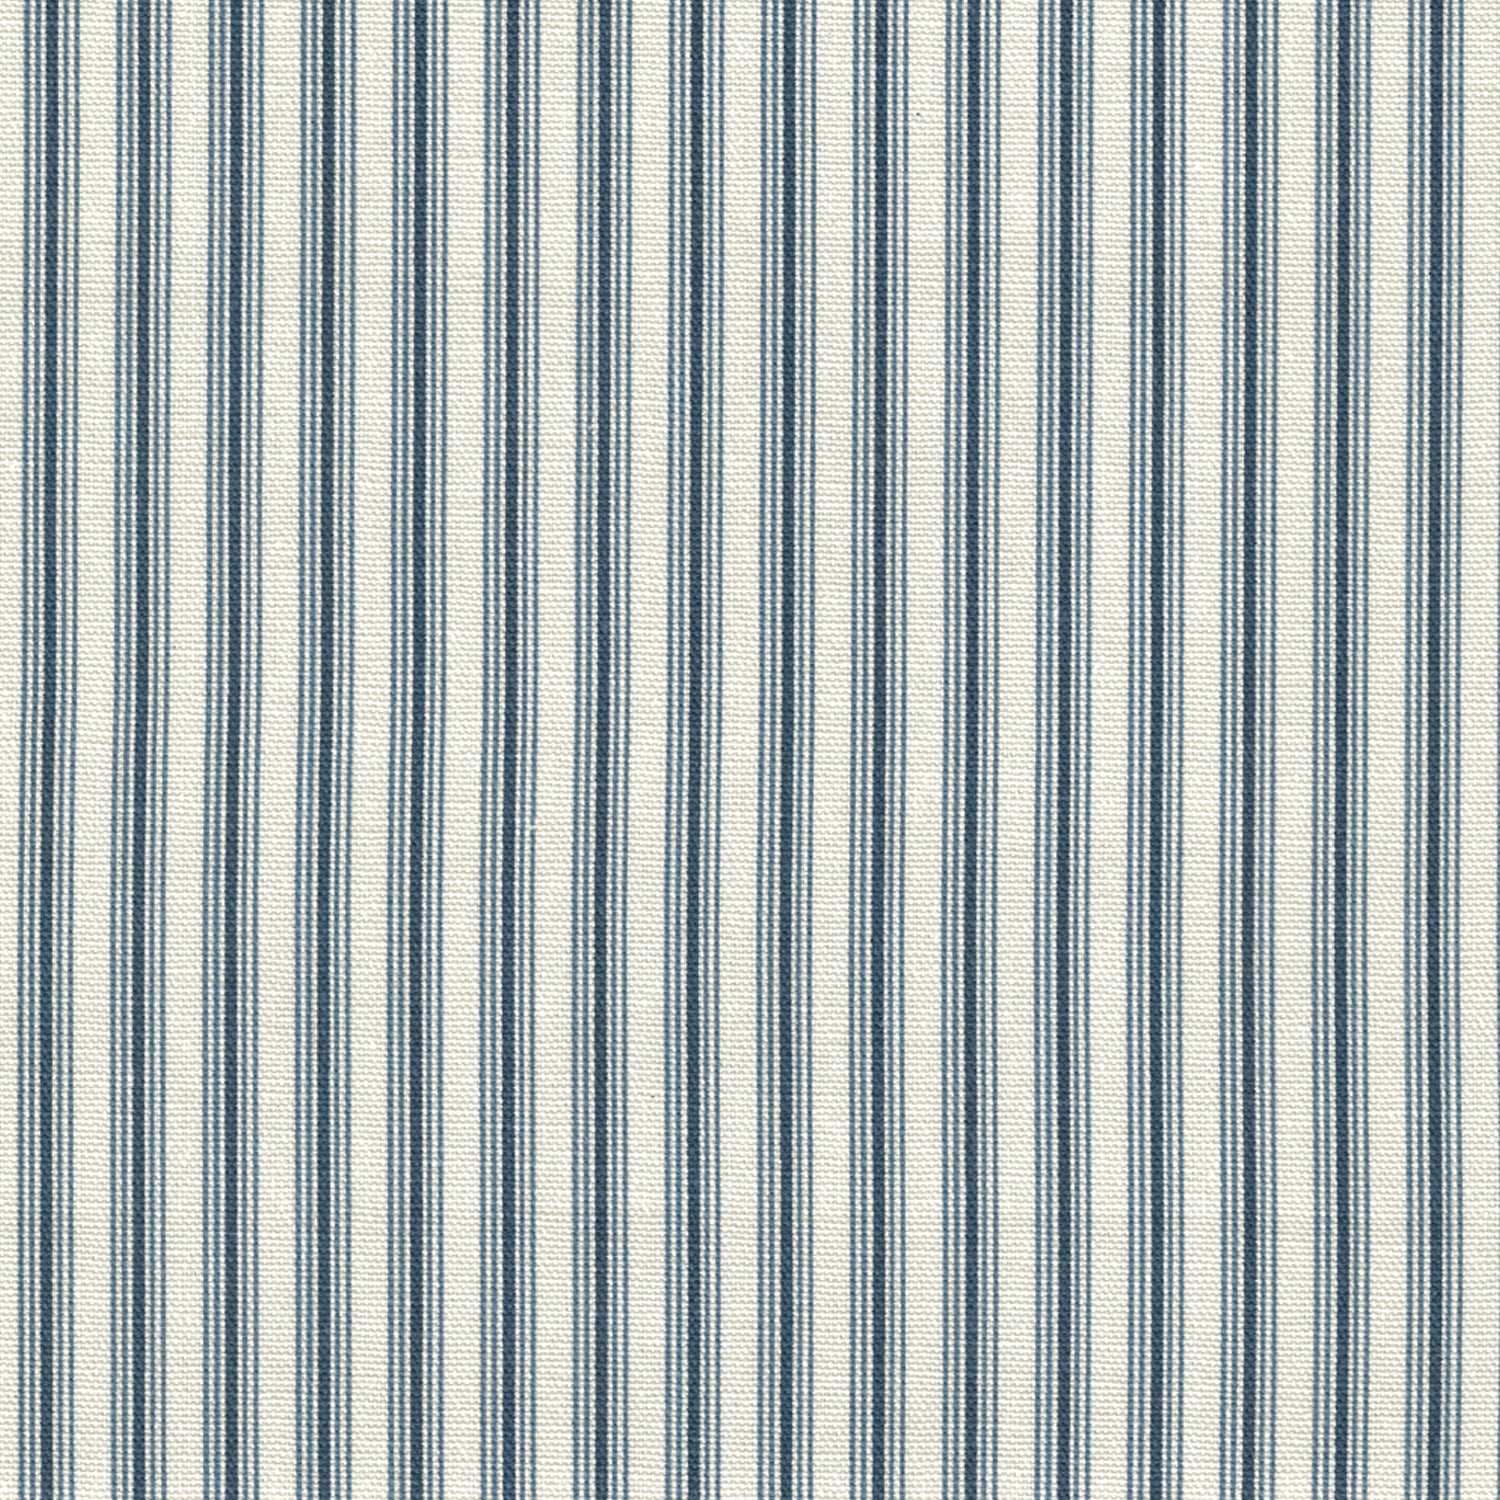 pillow sham in cottage navy blue stripe